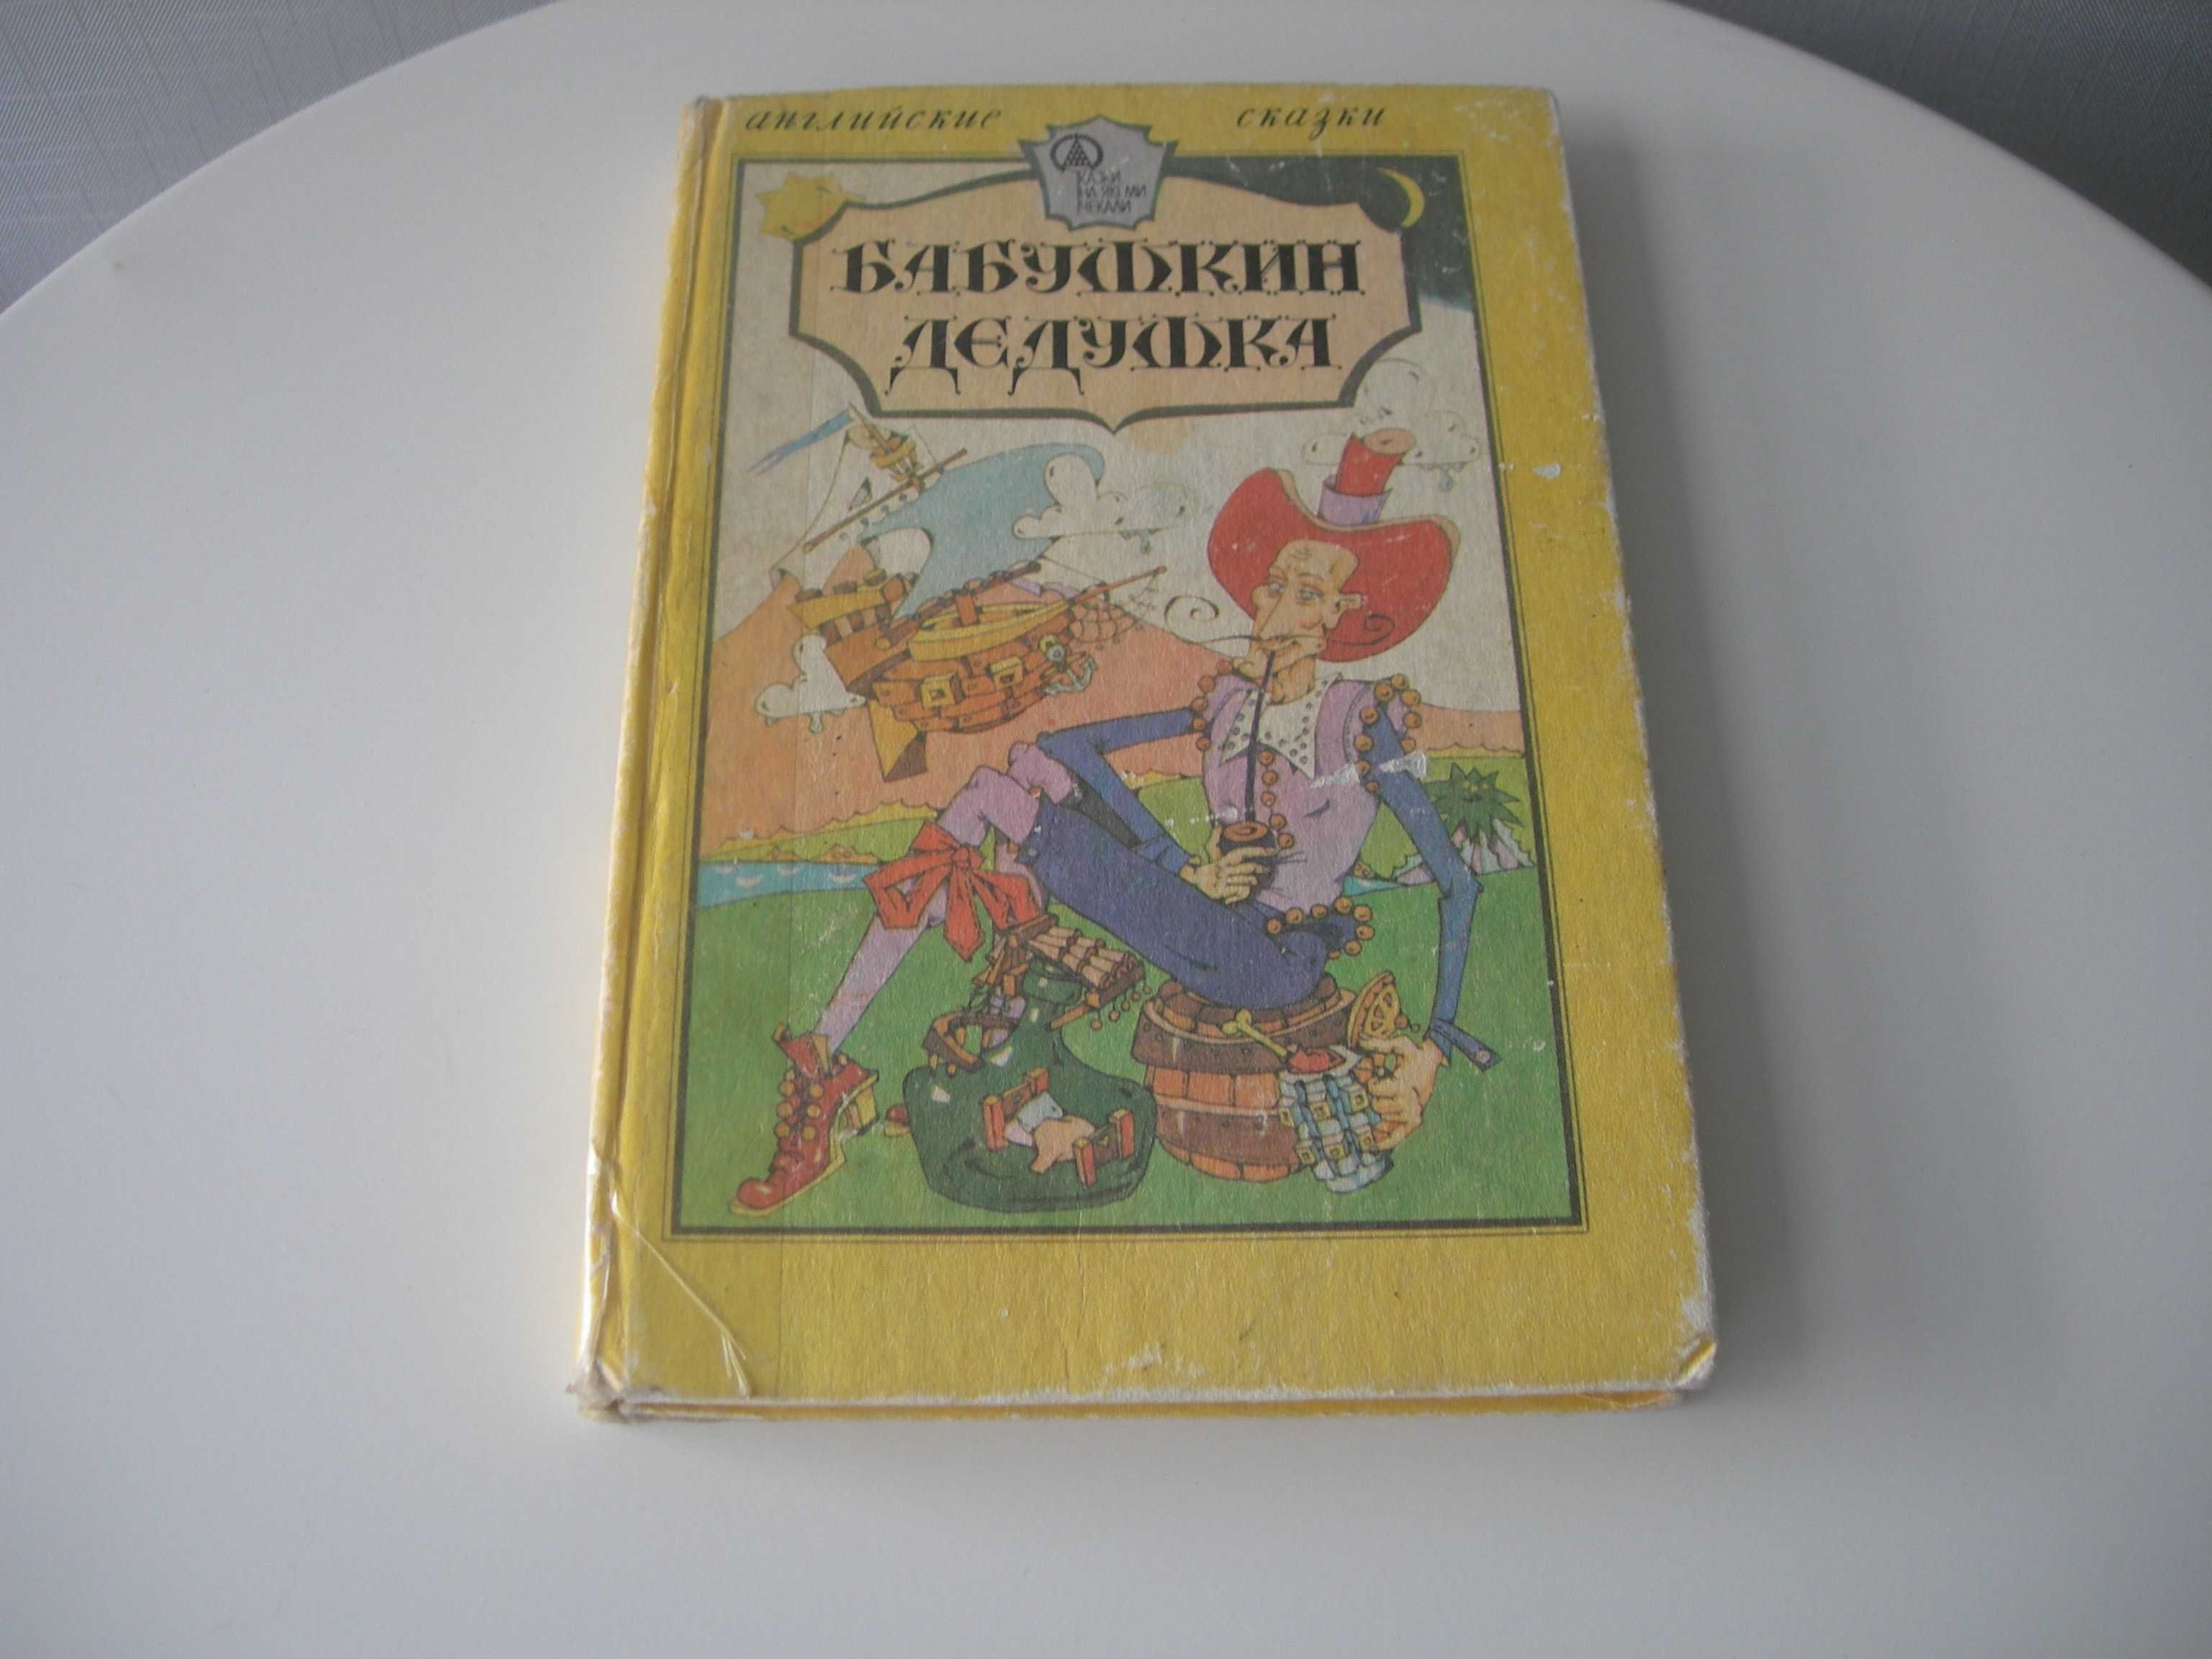 Бабушкин дедушка, Английские сказки, сборник